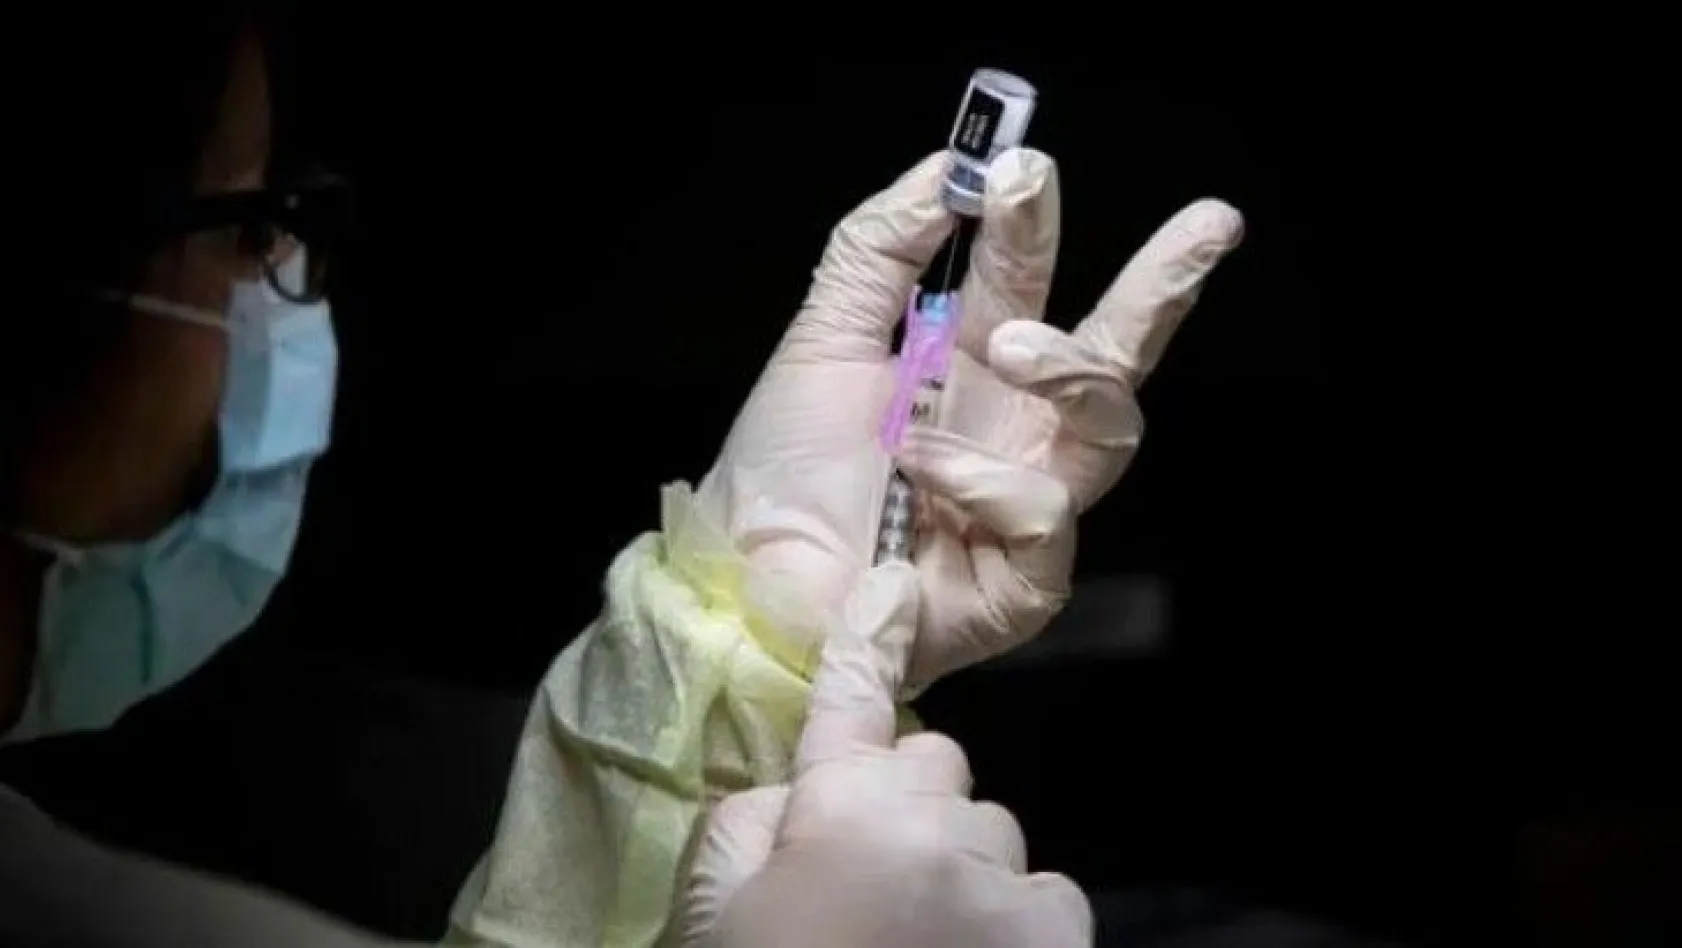 Dünya Sağlık Örgütü'nden tedirginlik yaratacak aşı açıklaması